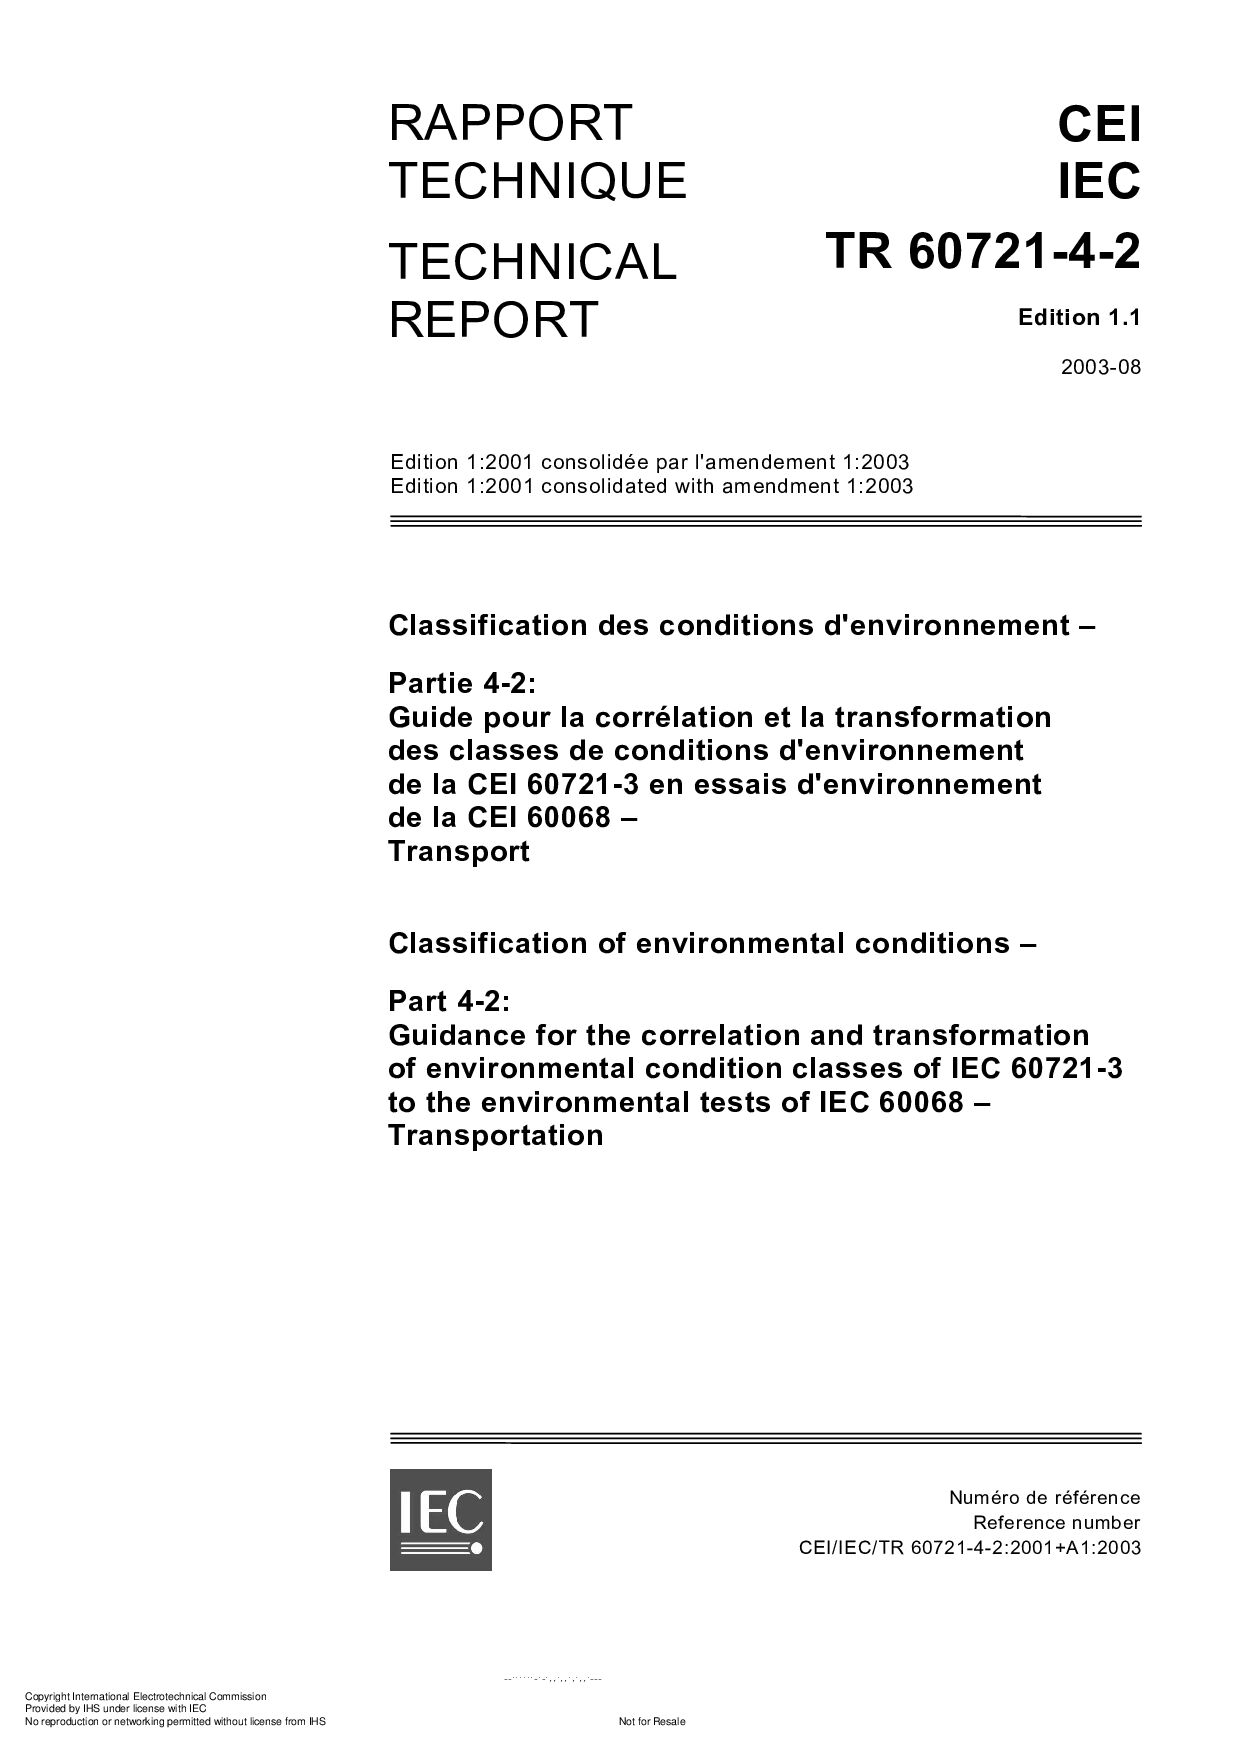 IEC/TR 60721-4-2 Edition 1.1-2003